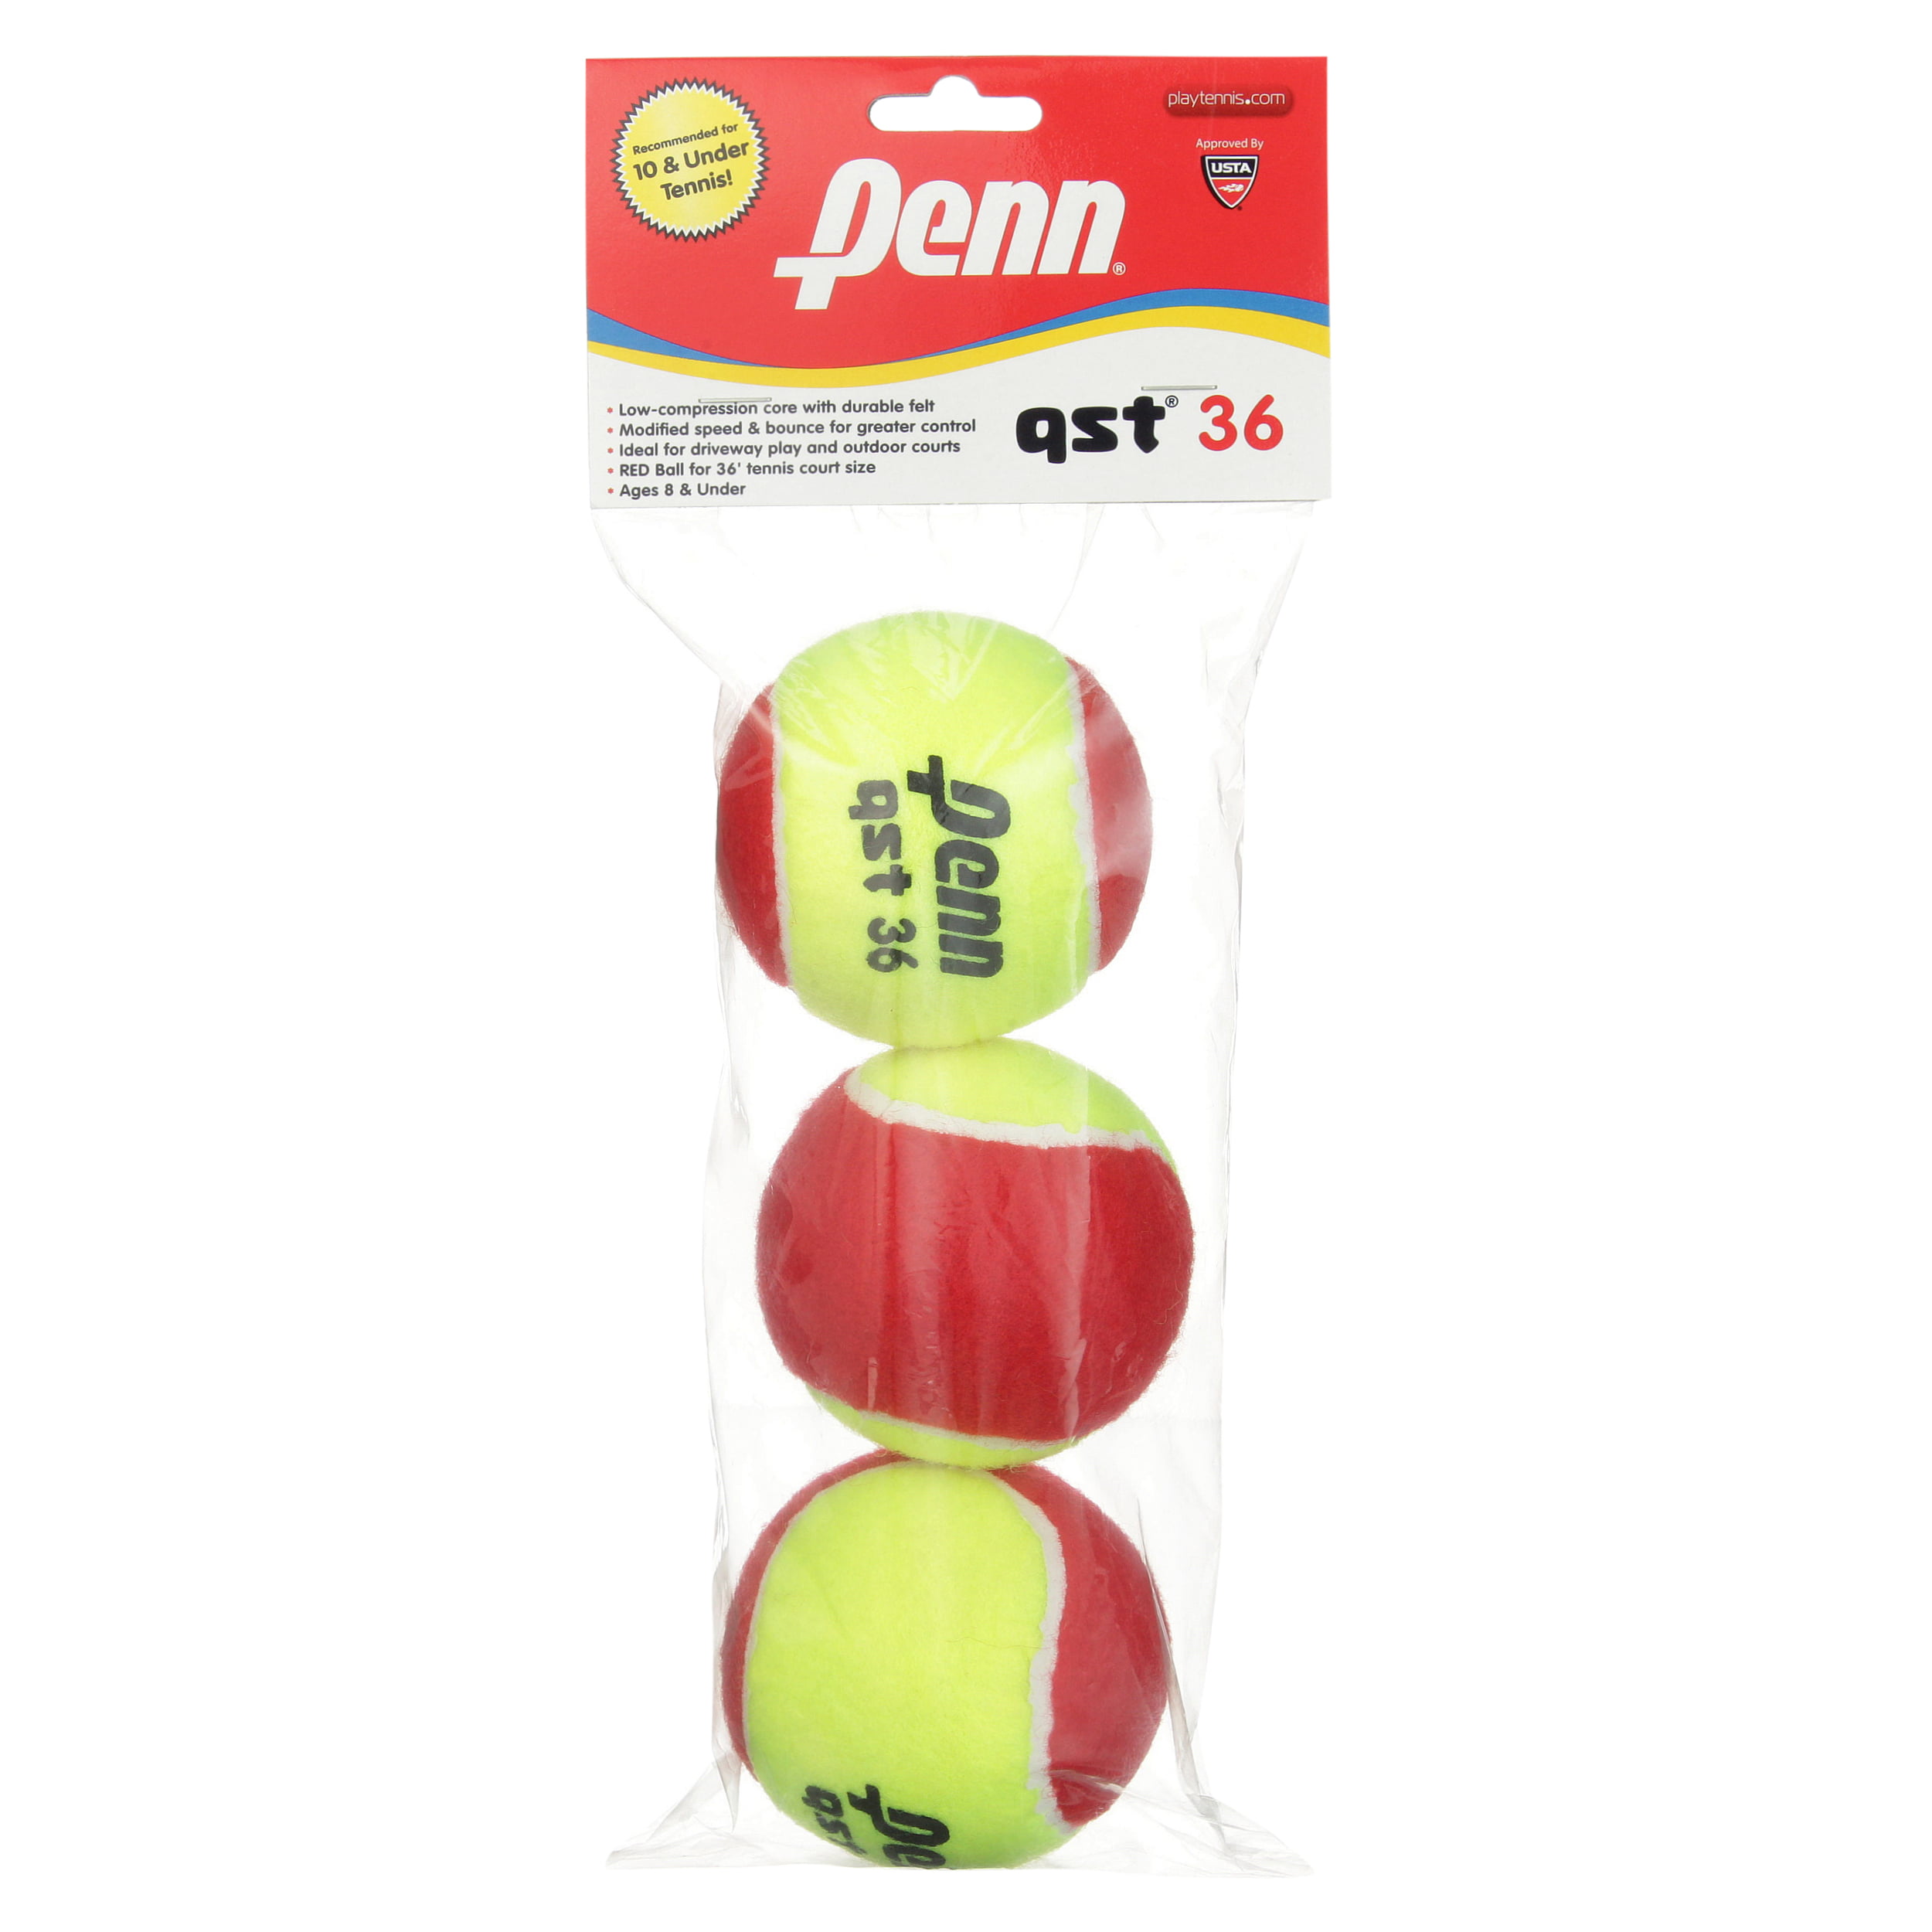 25 Used Tennis Balls PTR Penn Wilson Etc 